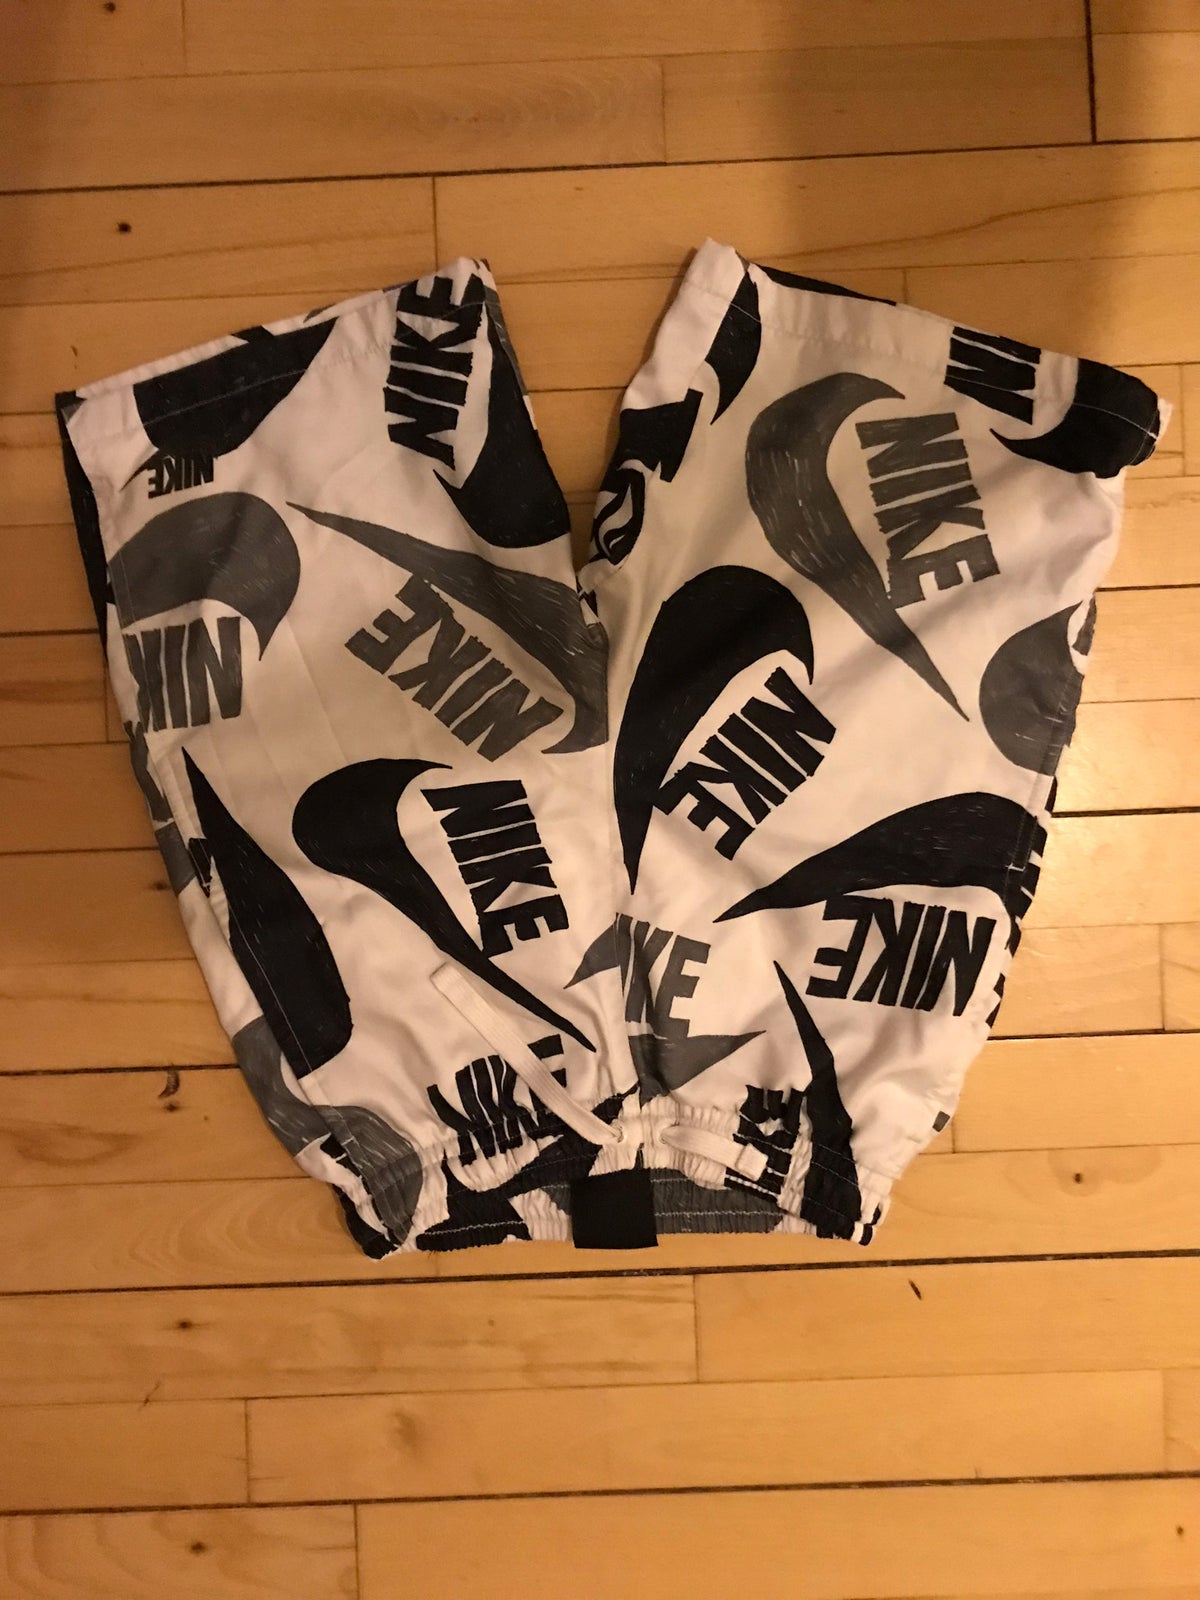 Shorts, Nike